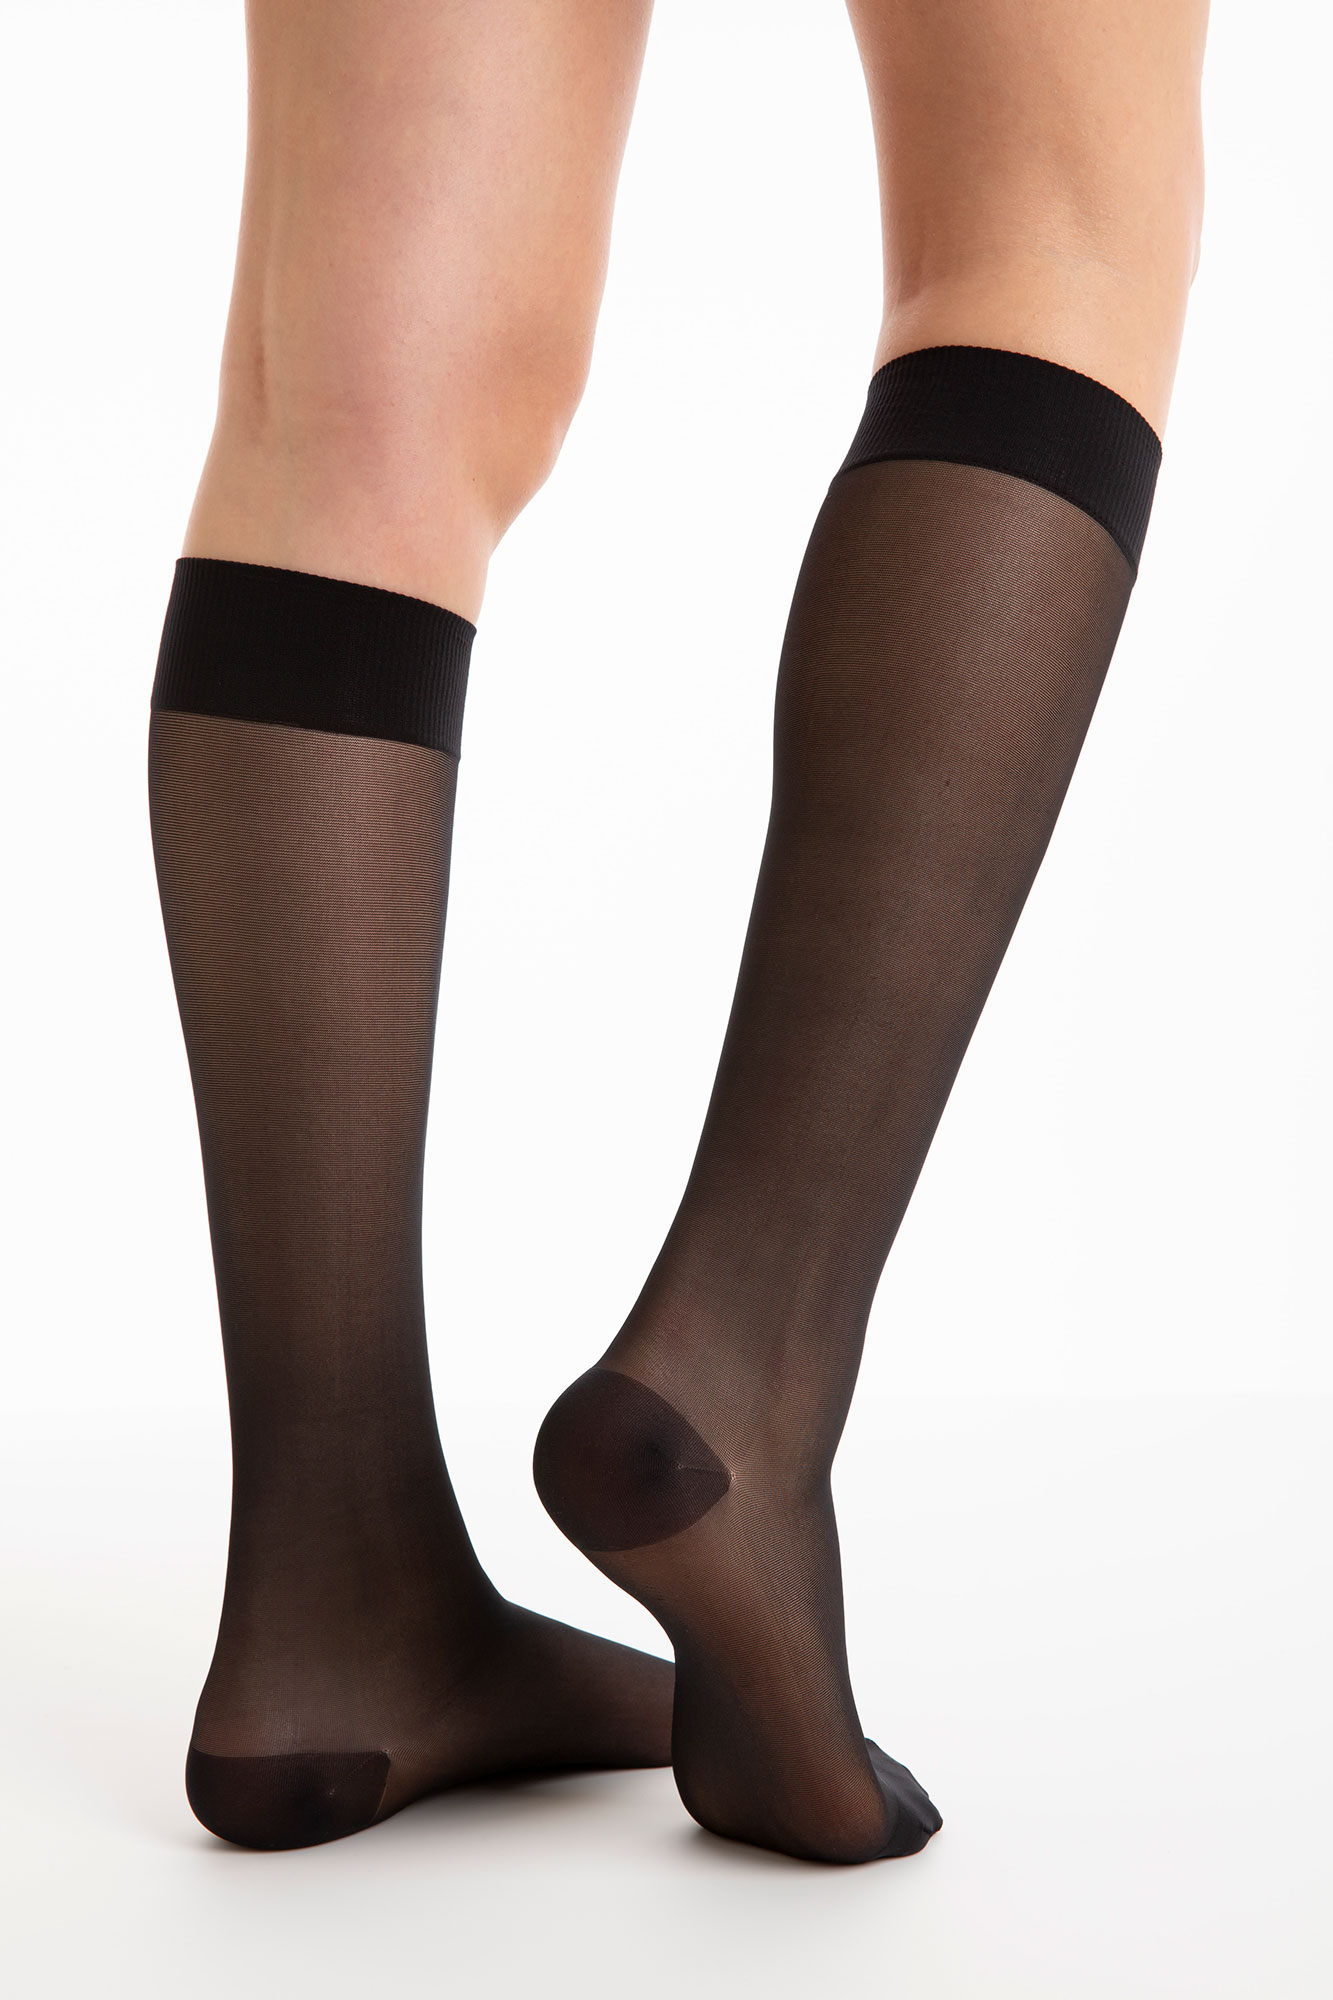 40 denier multifiber light support knee high socks 8-11 mmHg